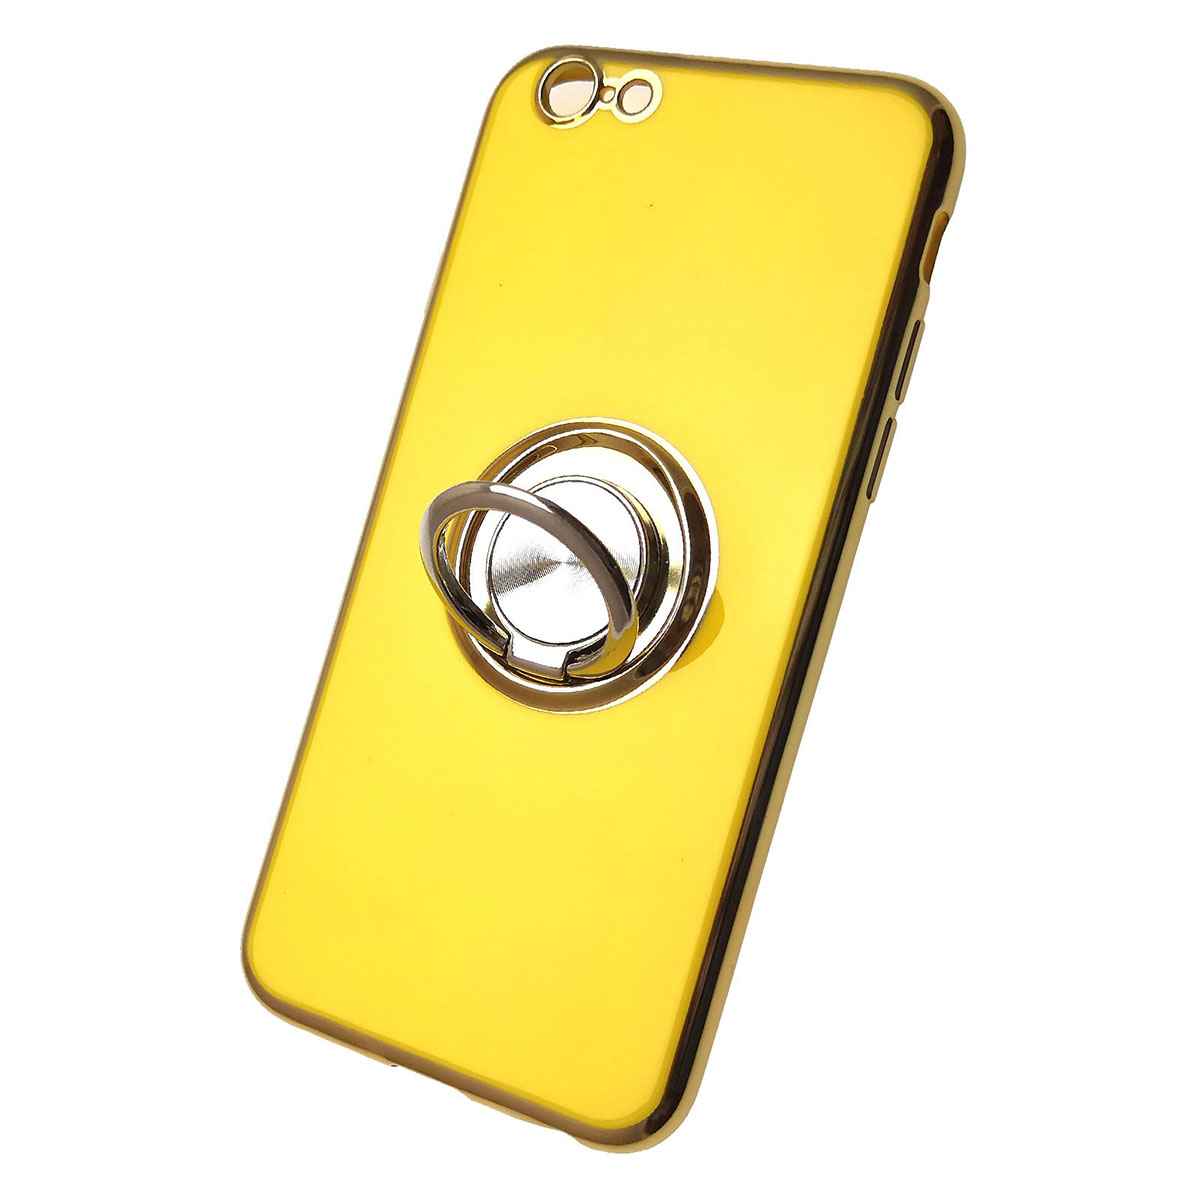 Чехол накладка для APPLE iPhone 6, 6G, 6S, силикон, с логотипом, кольцо держатель, цвет желтый.